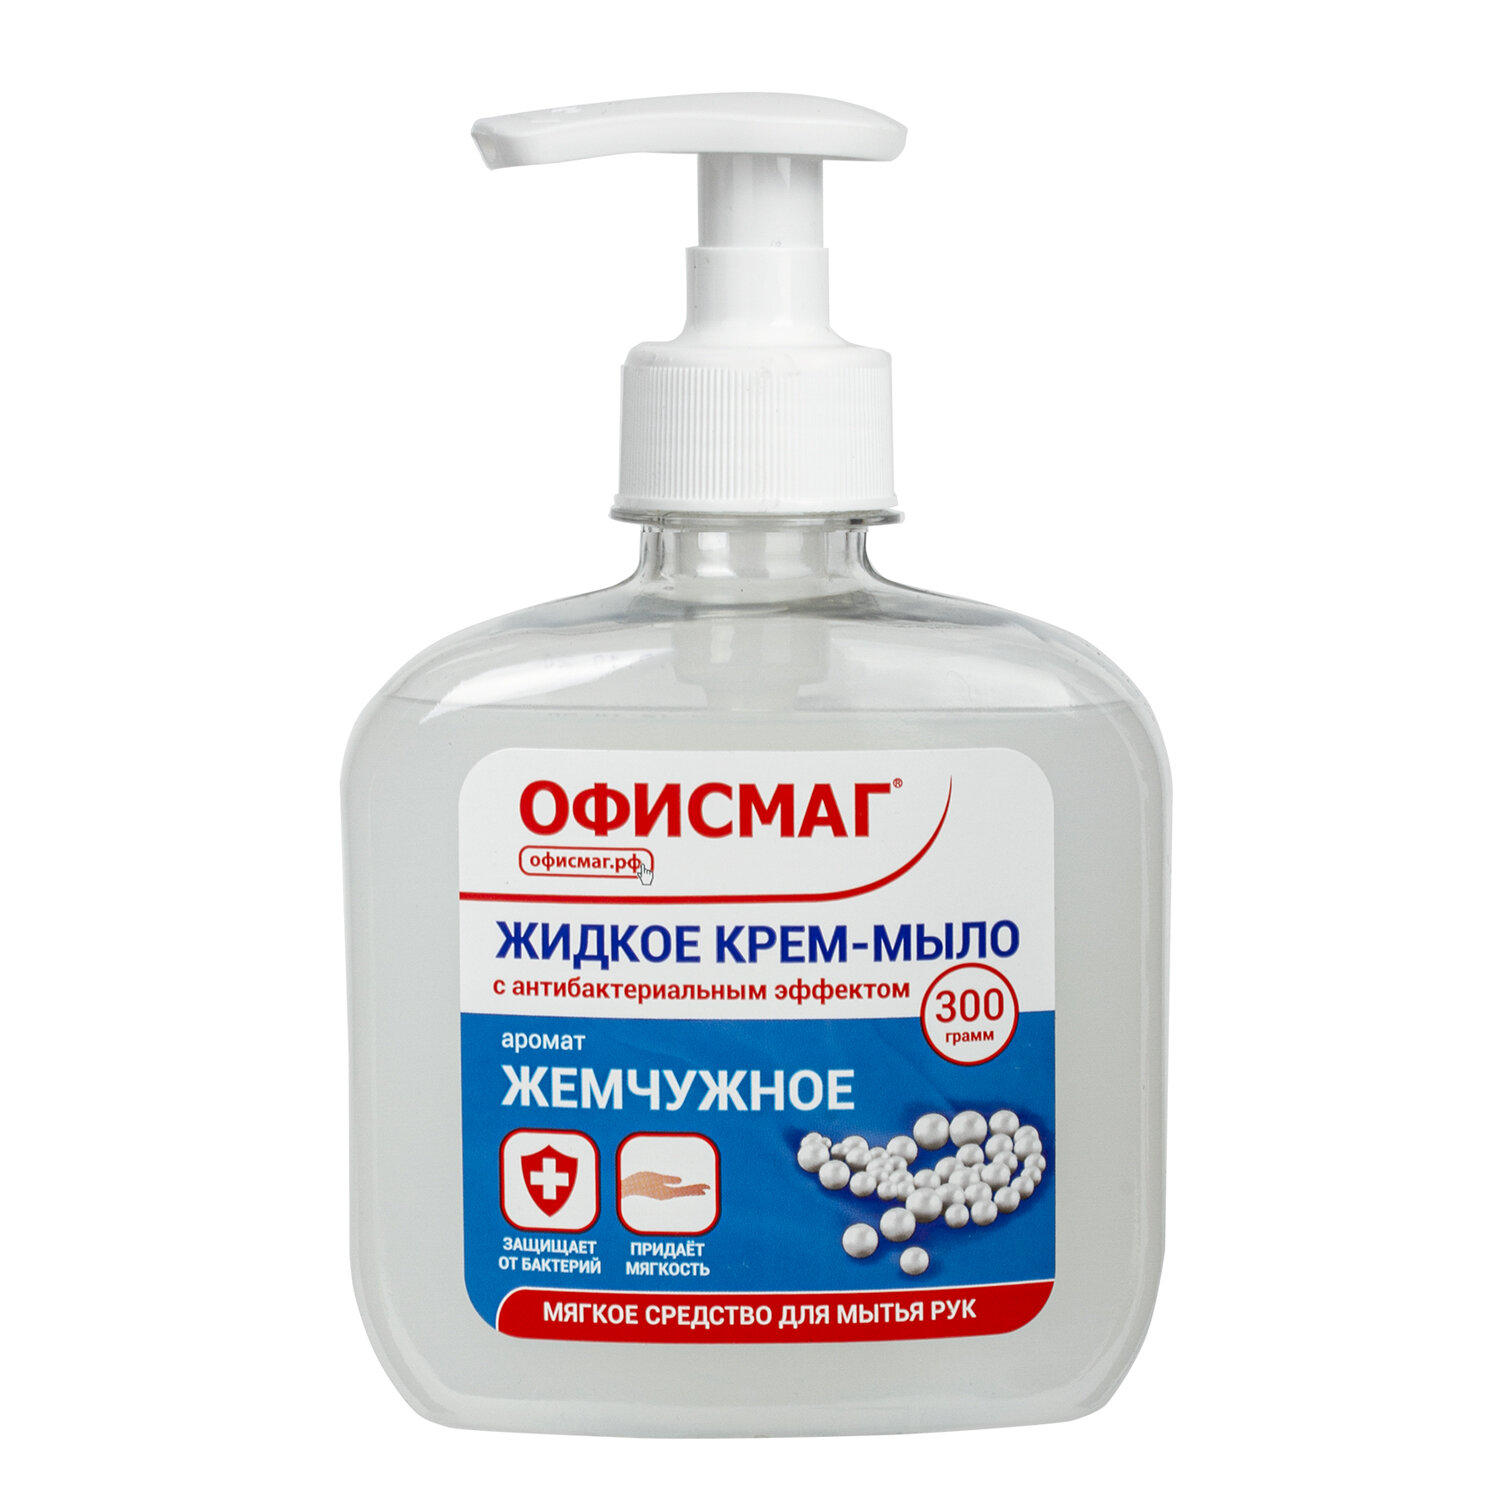 Жидкое крем-мыло Офисмаг Премиум жемчужное с антибактериальным эффектом 12 шт х 300 мл